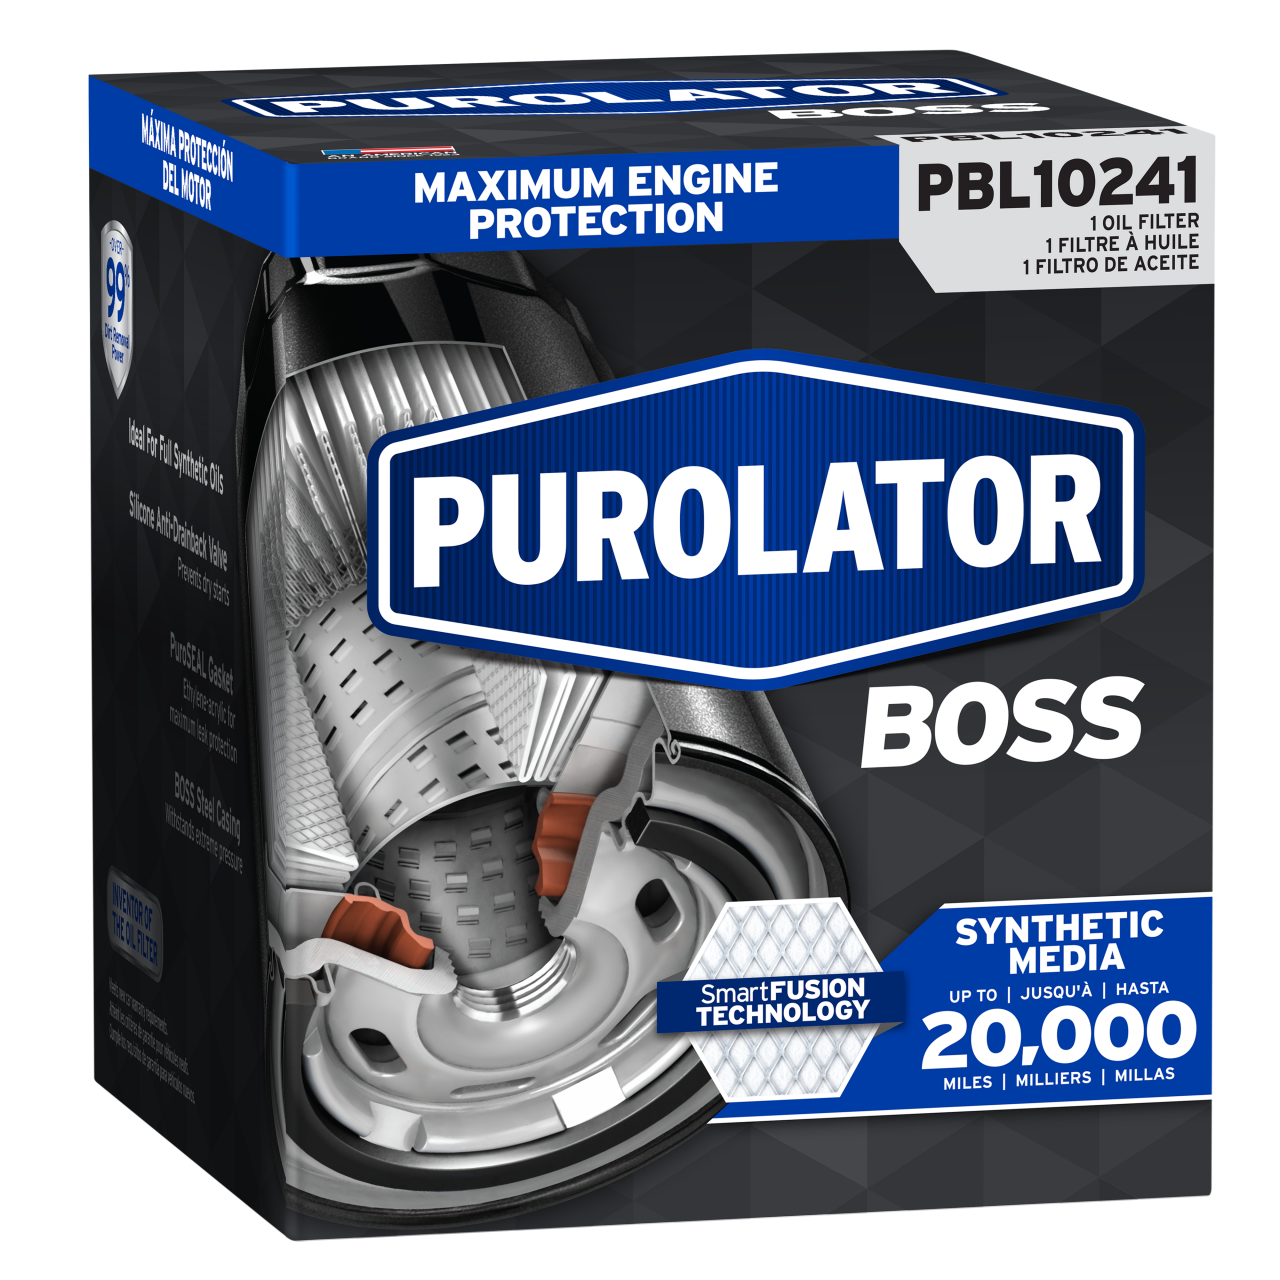 Pour une protection et des performances maximales du moteur, optez pour les filtres à huile PurolatorBOSS® Protection maximale du moteur.